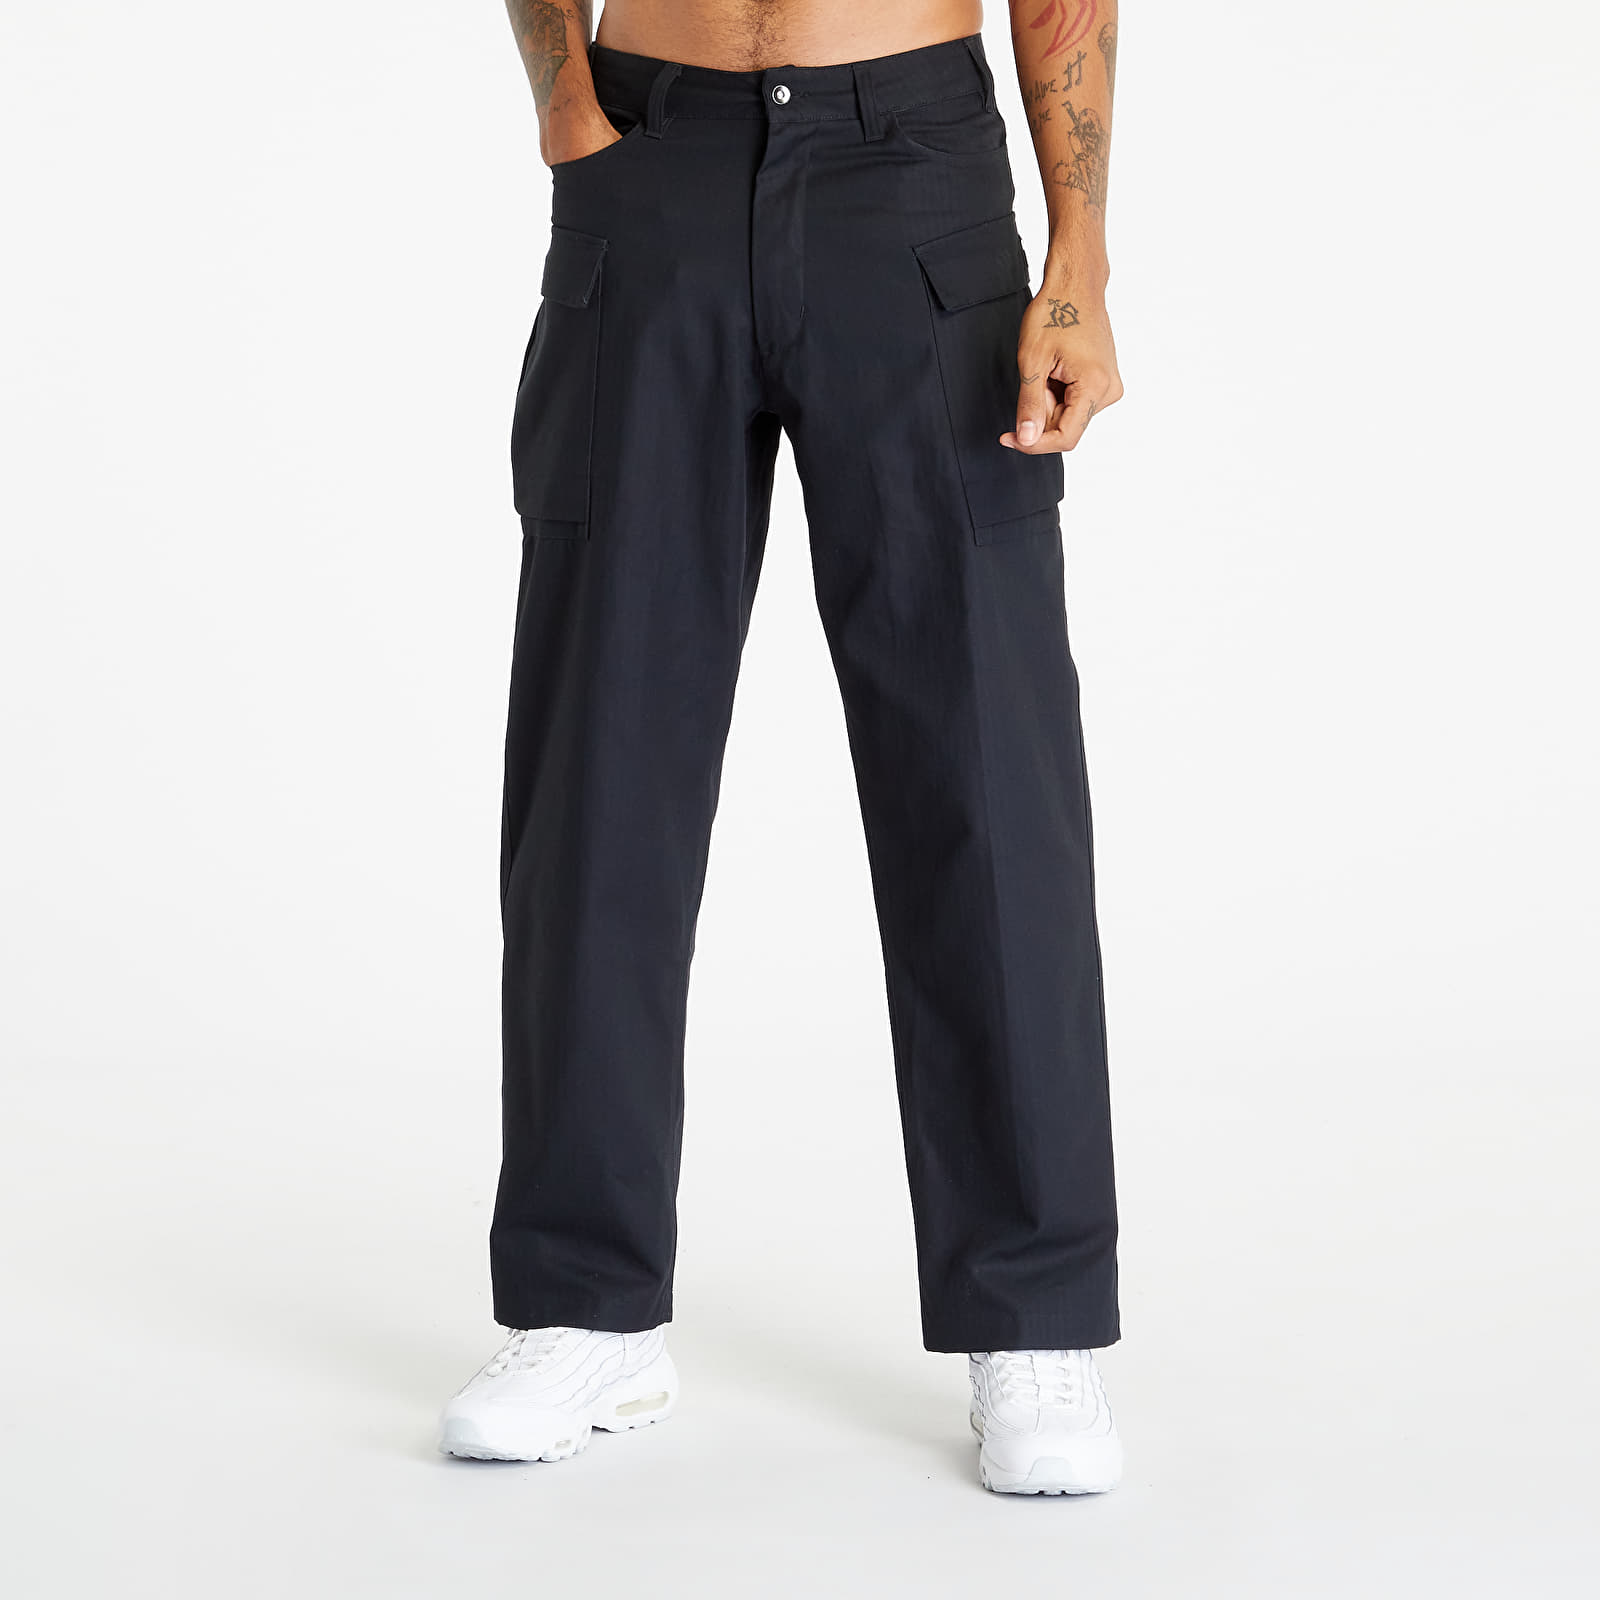 Nike - life men's cargo pants black/ black